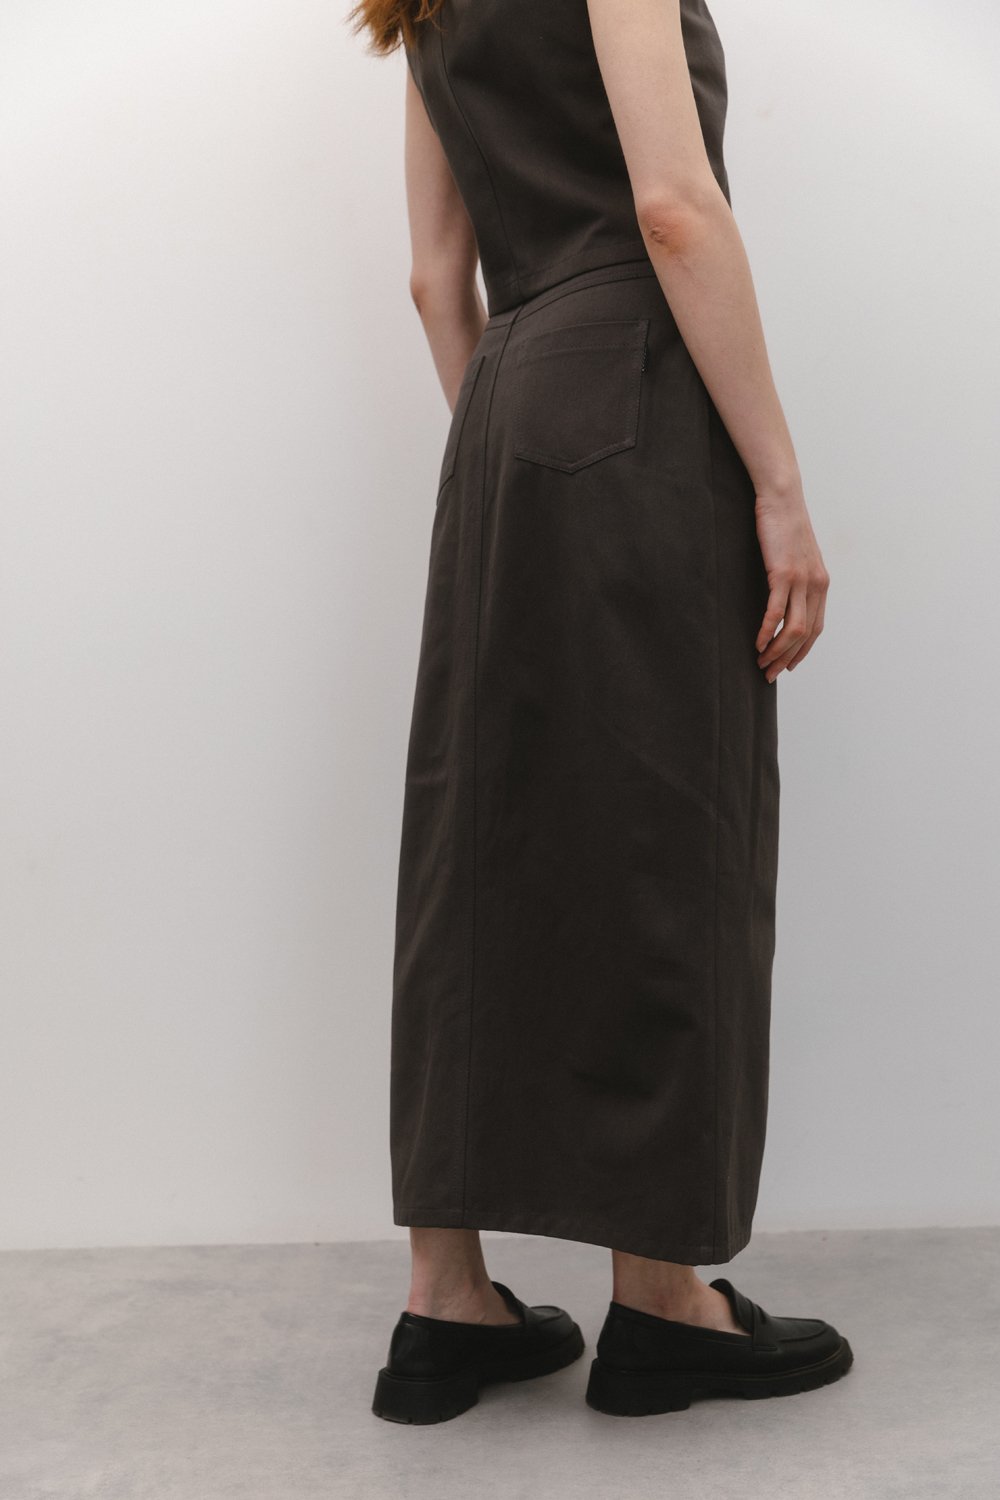 Graphite denim skirt with front slit